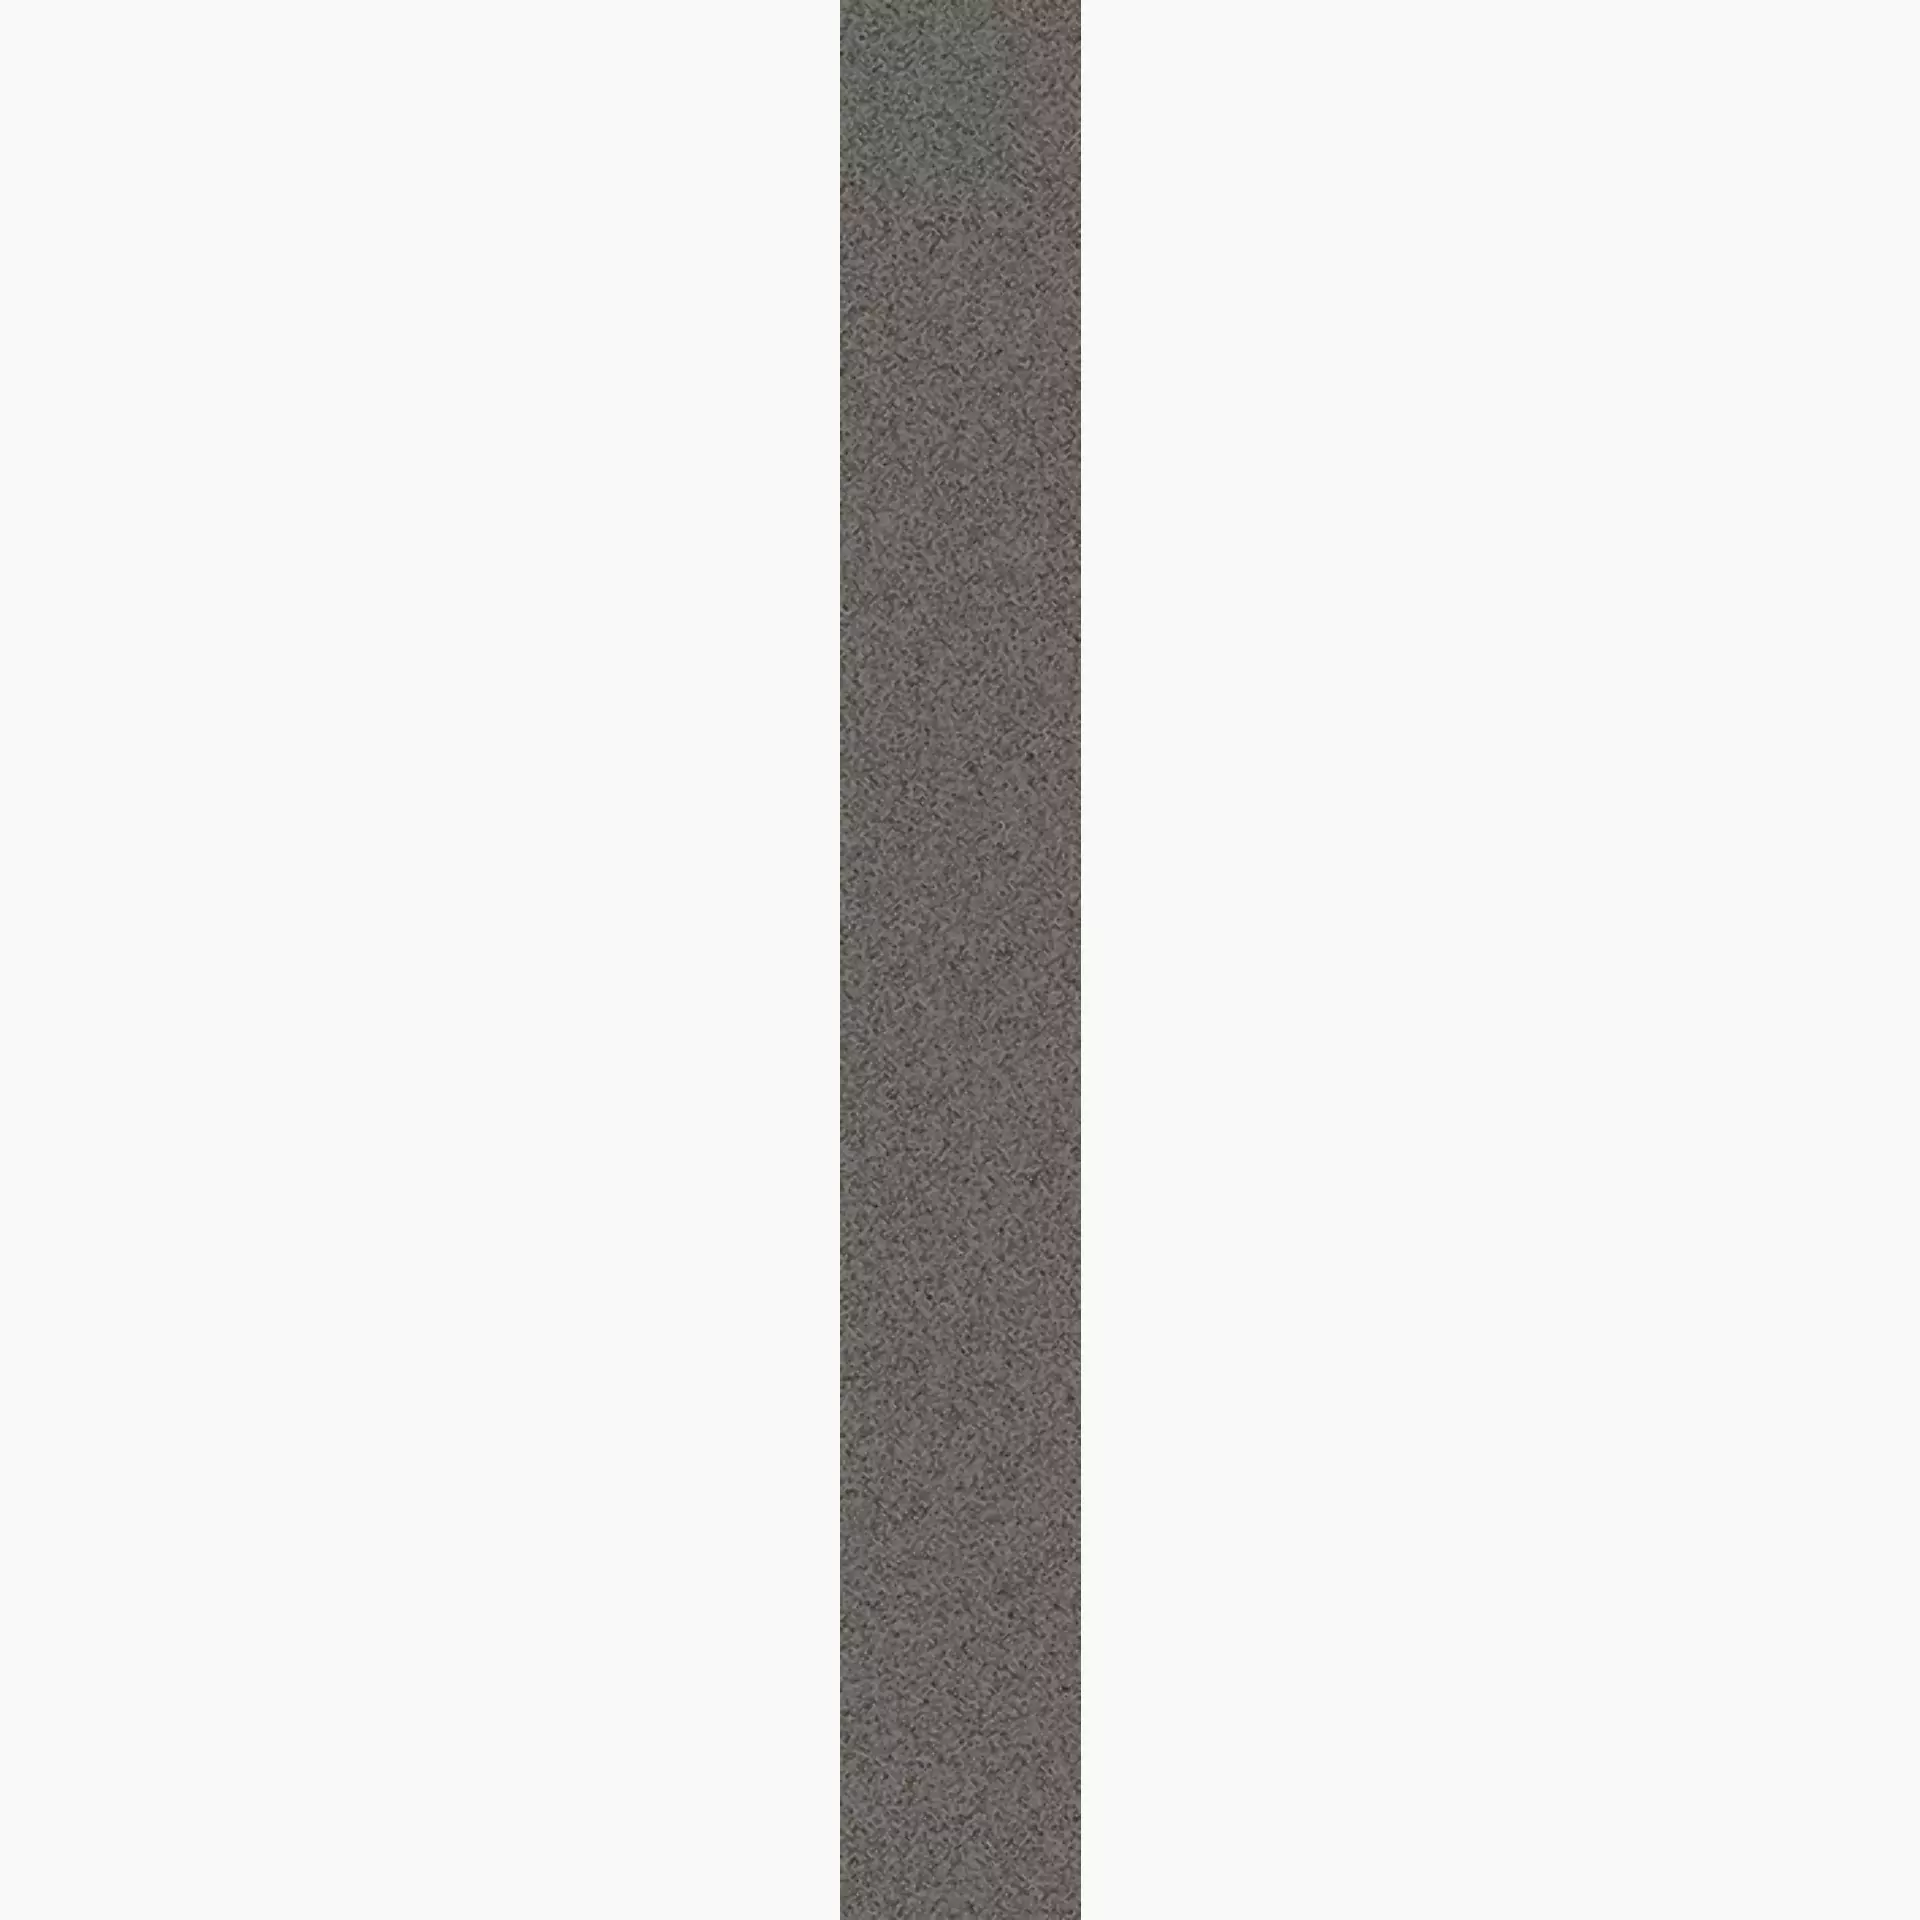 Wandfliese,Bodenfliese Villeroy & Boch Pure Line 2.0 Concrete Grey Matt Concrete Grey 2617-UL62 matt 7,5x60cm rektifiziert 12mm